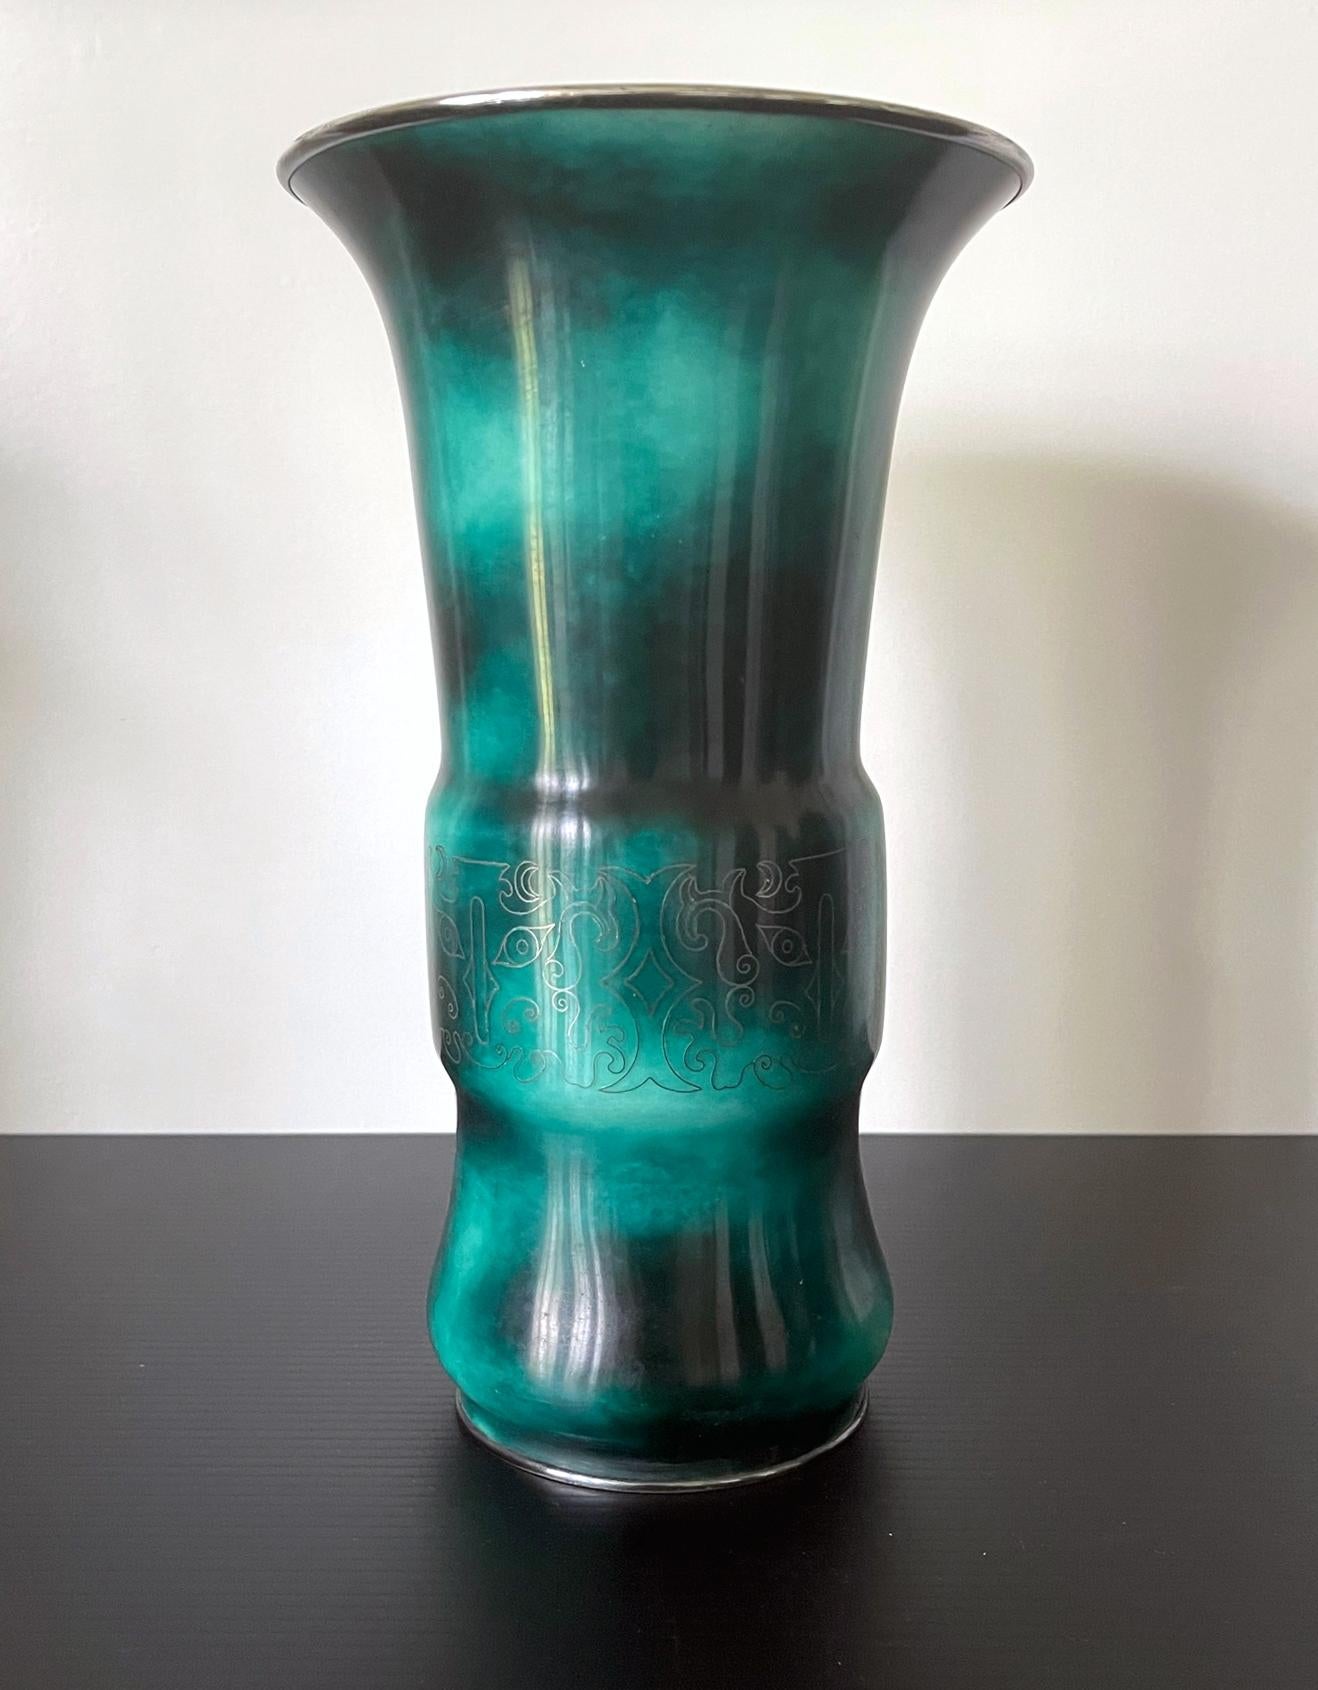 Vase japonais en cloisonné de la société Ando, vers 1910-30, fin de la période Meiji à Tasho. Le vase reprend une forme archaïque chinoise de récipient en bronze connue sous le nom de 